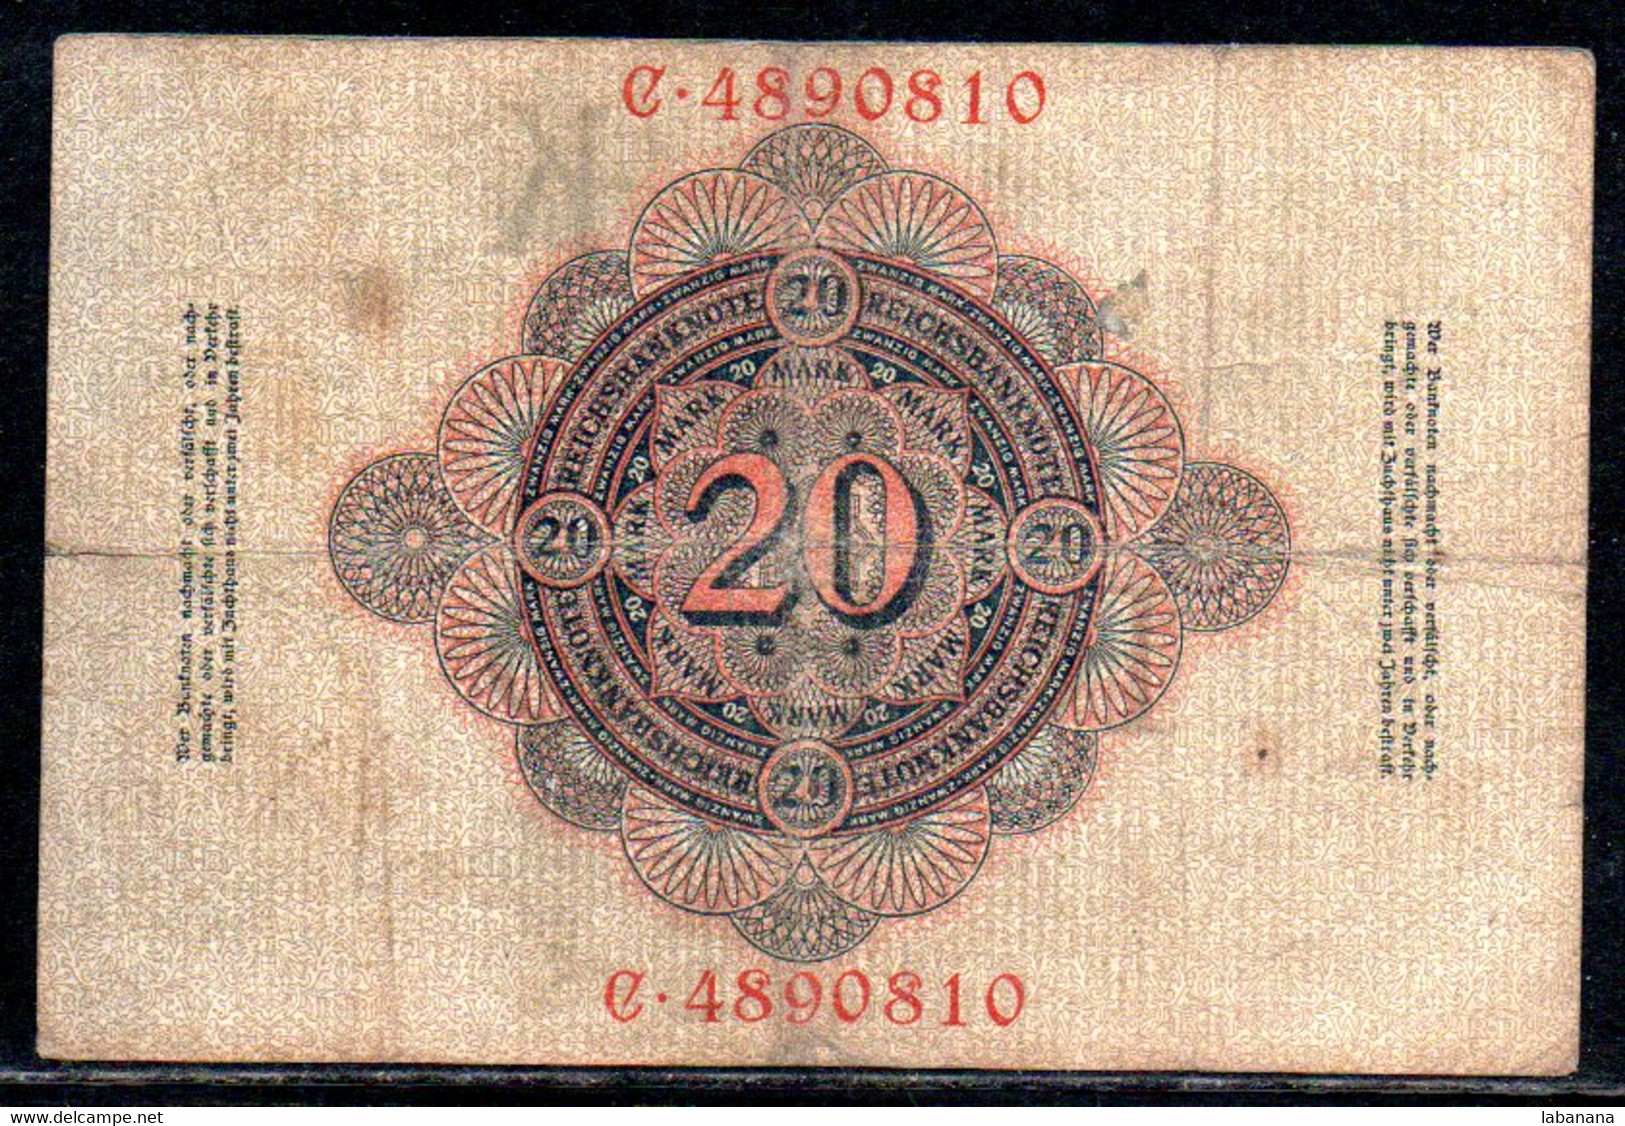 659-Allemagne 20m 1908 C489 - 20 Mark